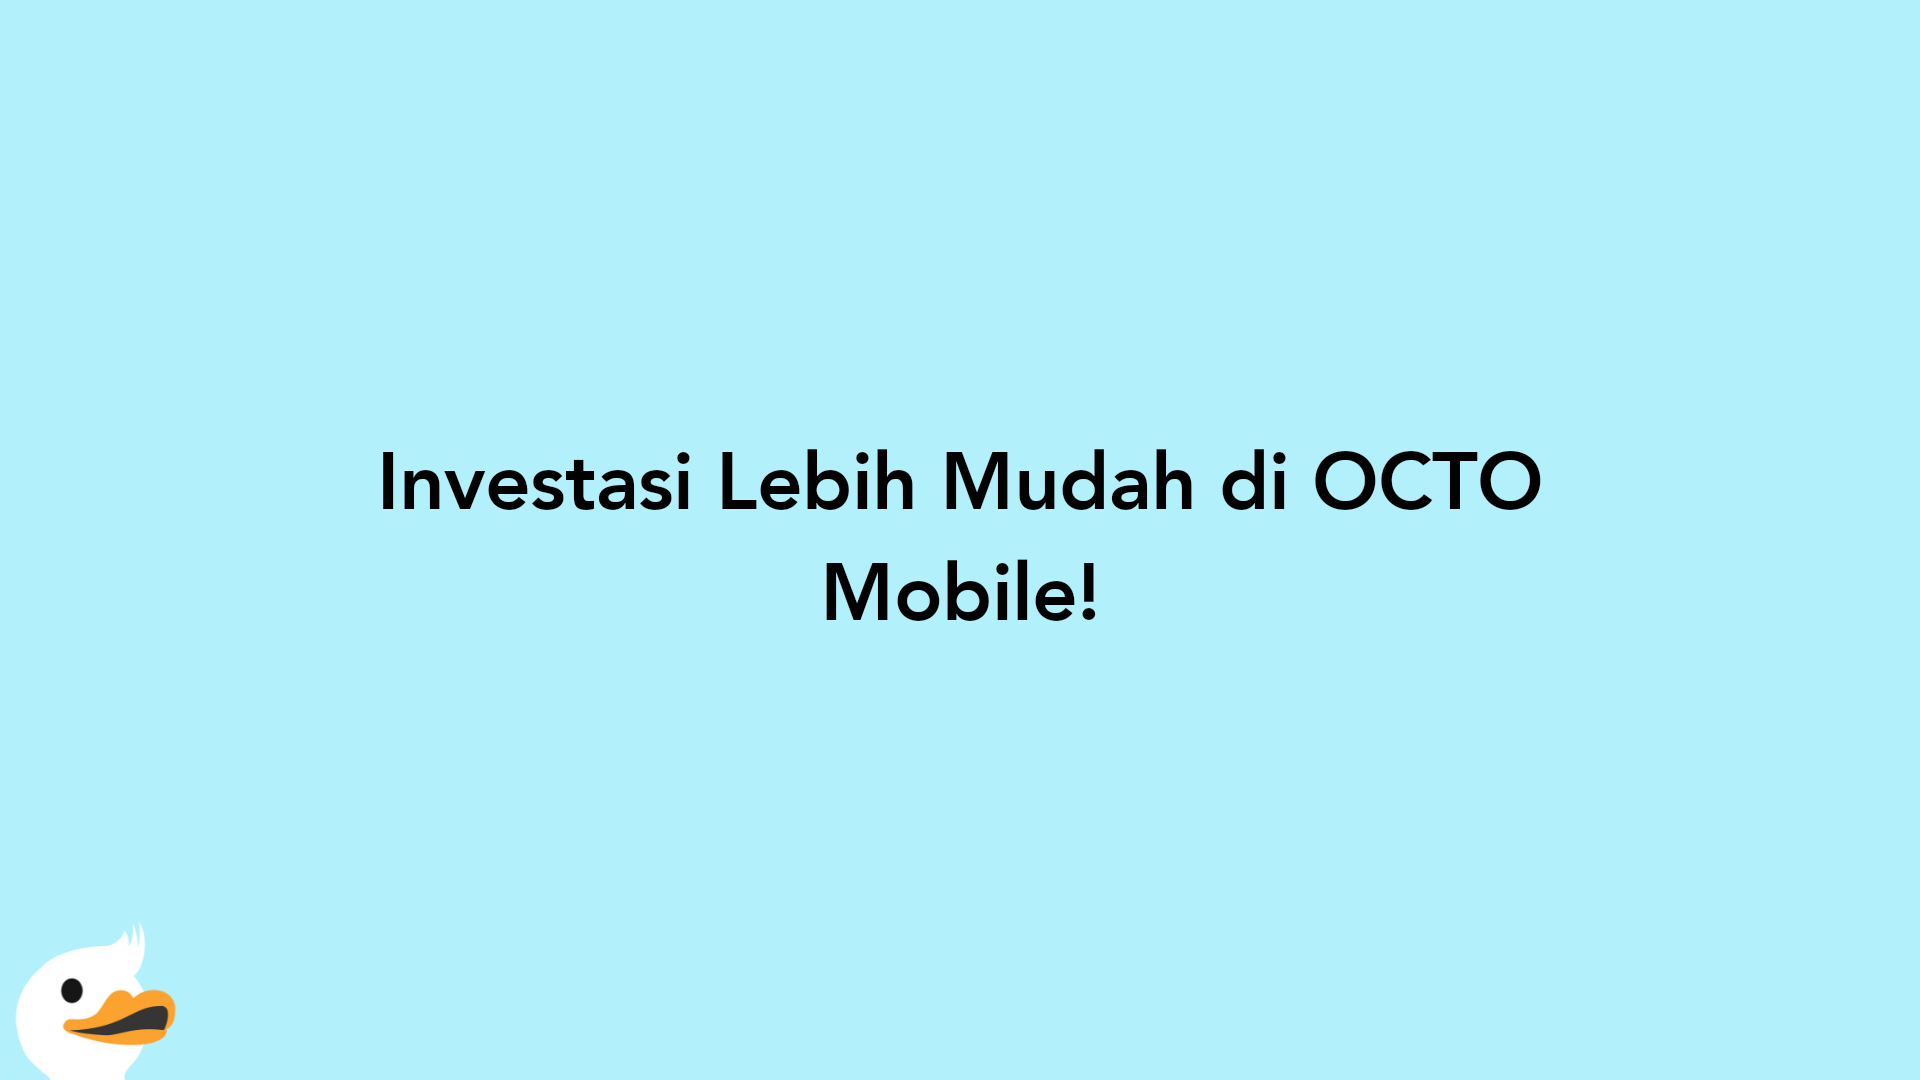 Investasi Lebih Mudah di OCTO Mobile!